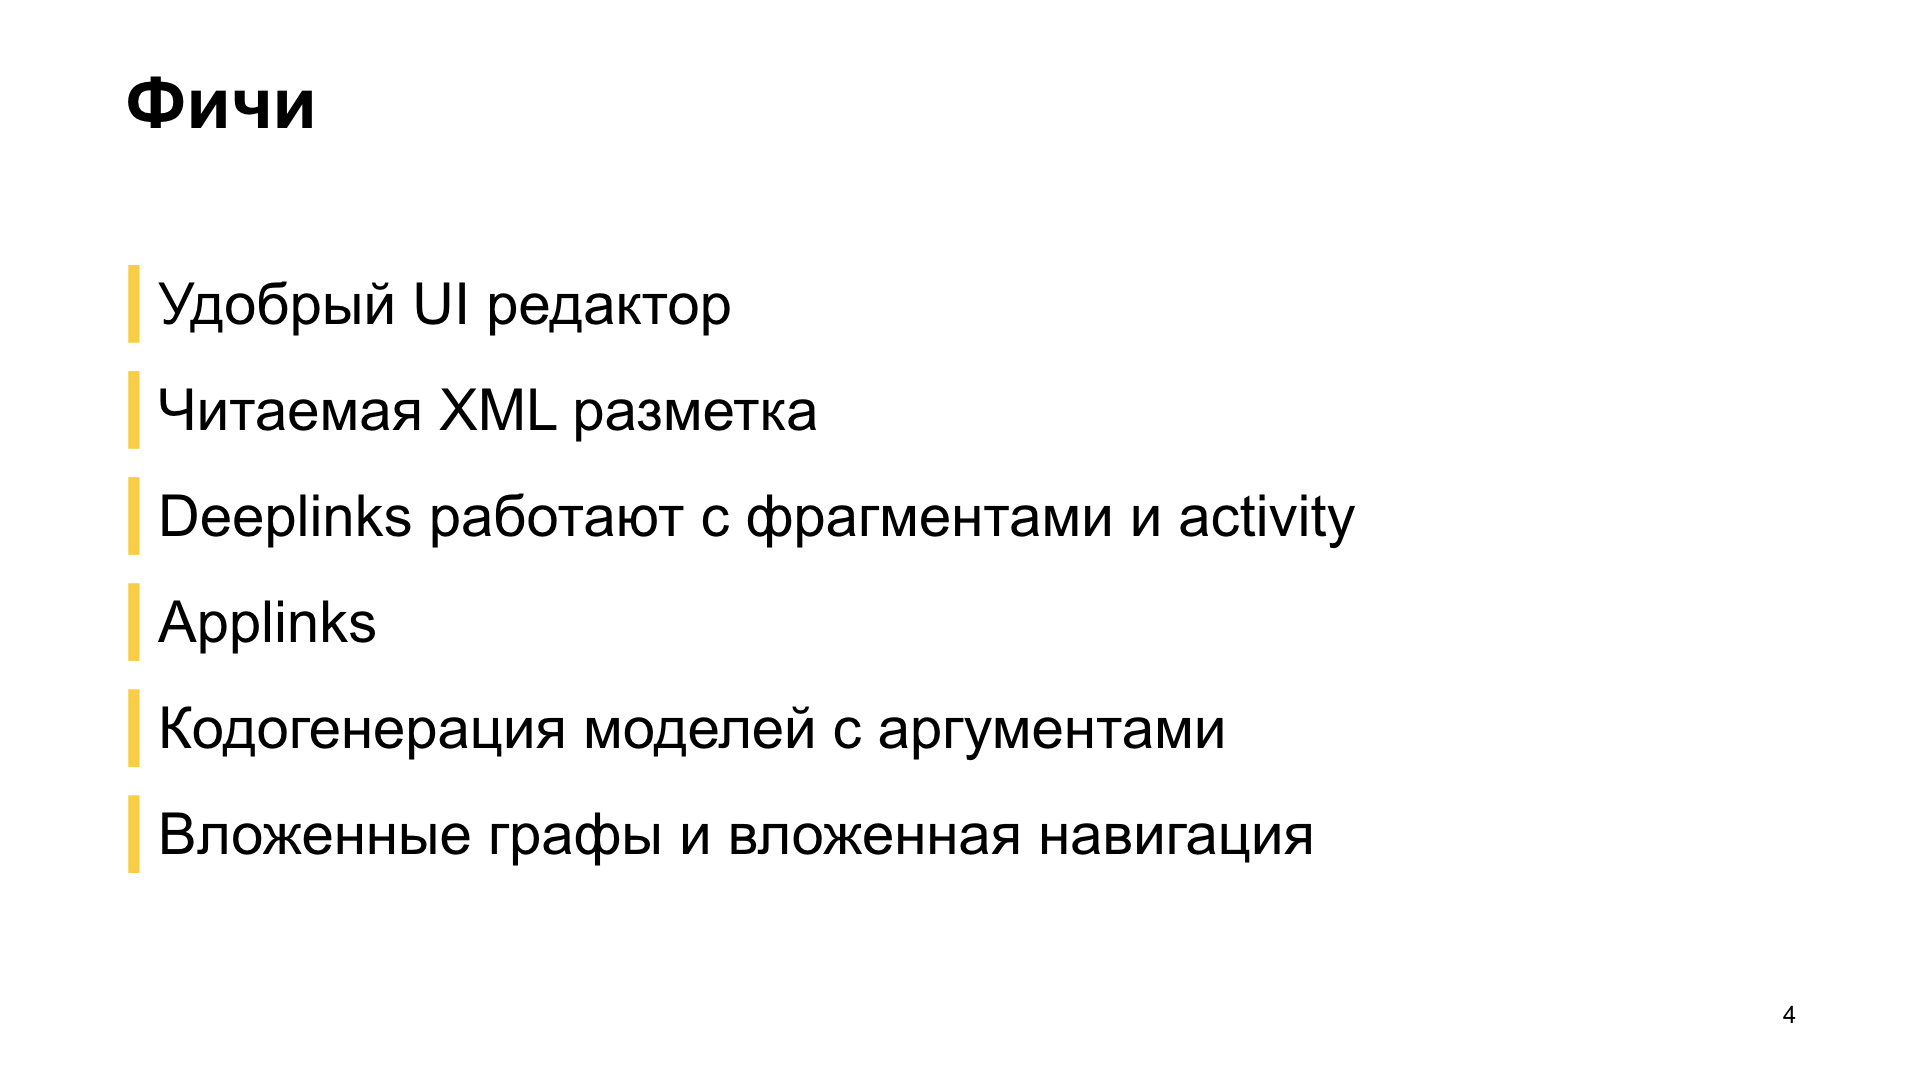 Как мы внедряли навигацию из Jetpack в боевое приложение. Доклад Яндекс.Еды - 4